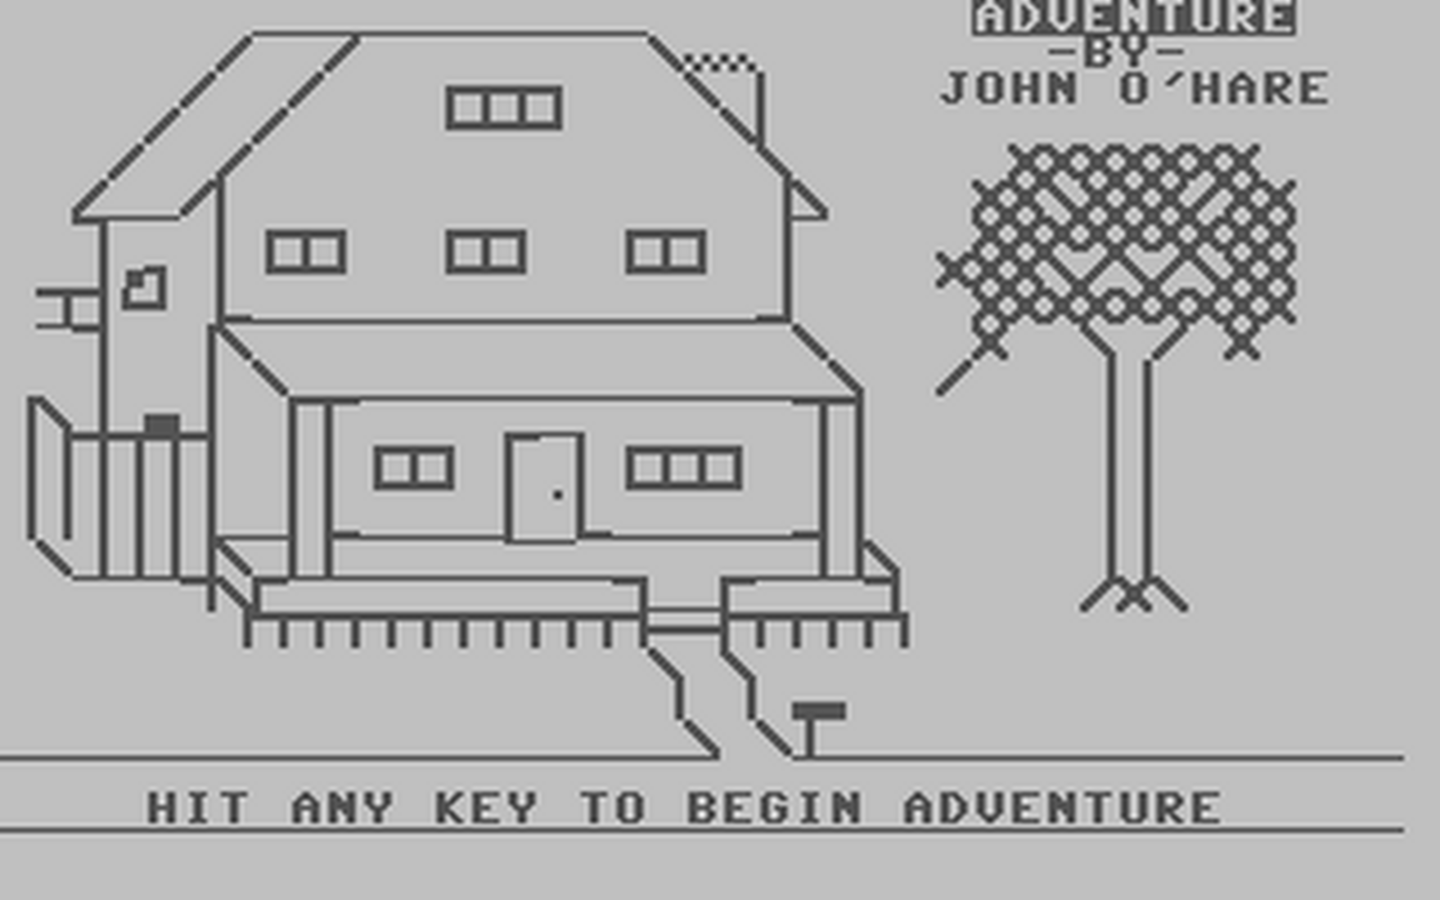 C64 GameBase Adventure_3_-_Haunted_Mansion (Public_Domain) 1980